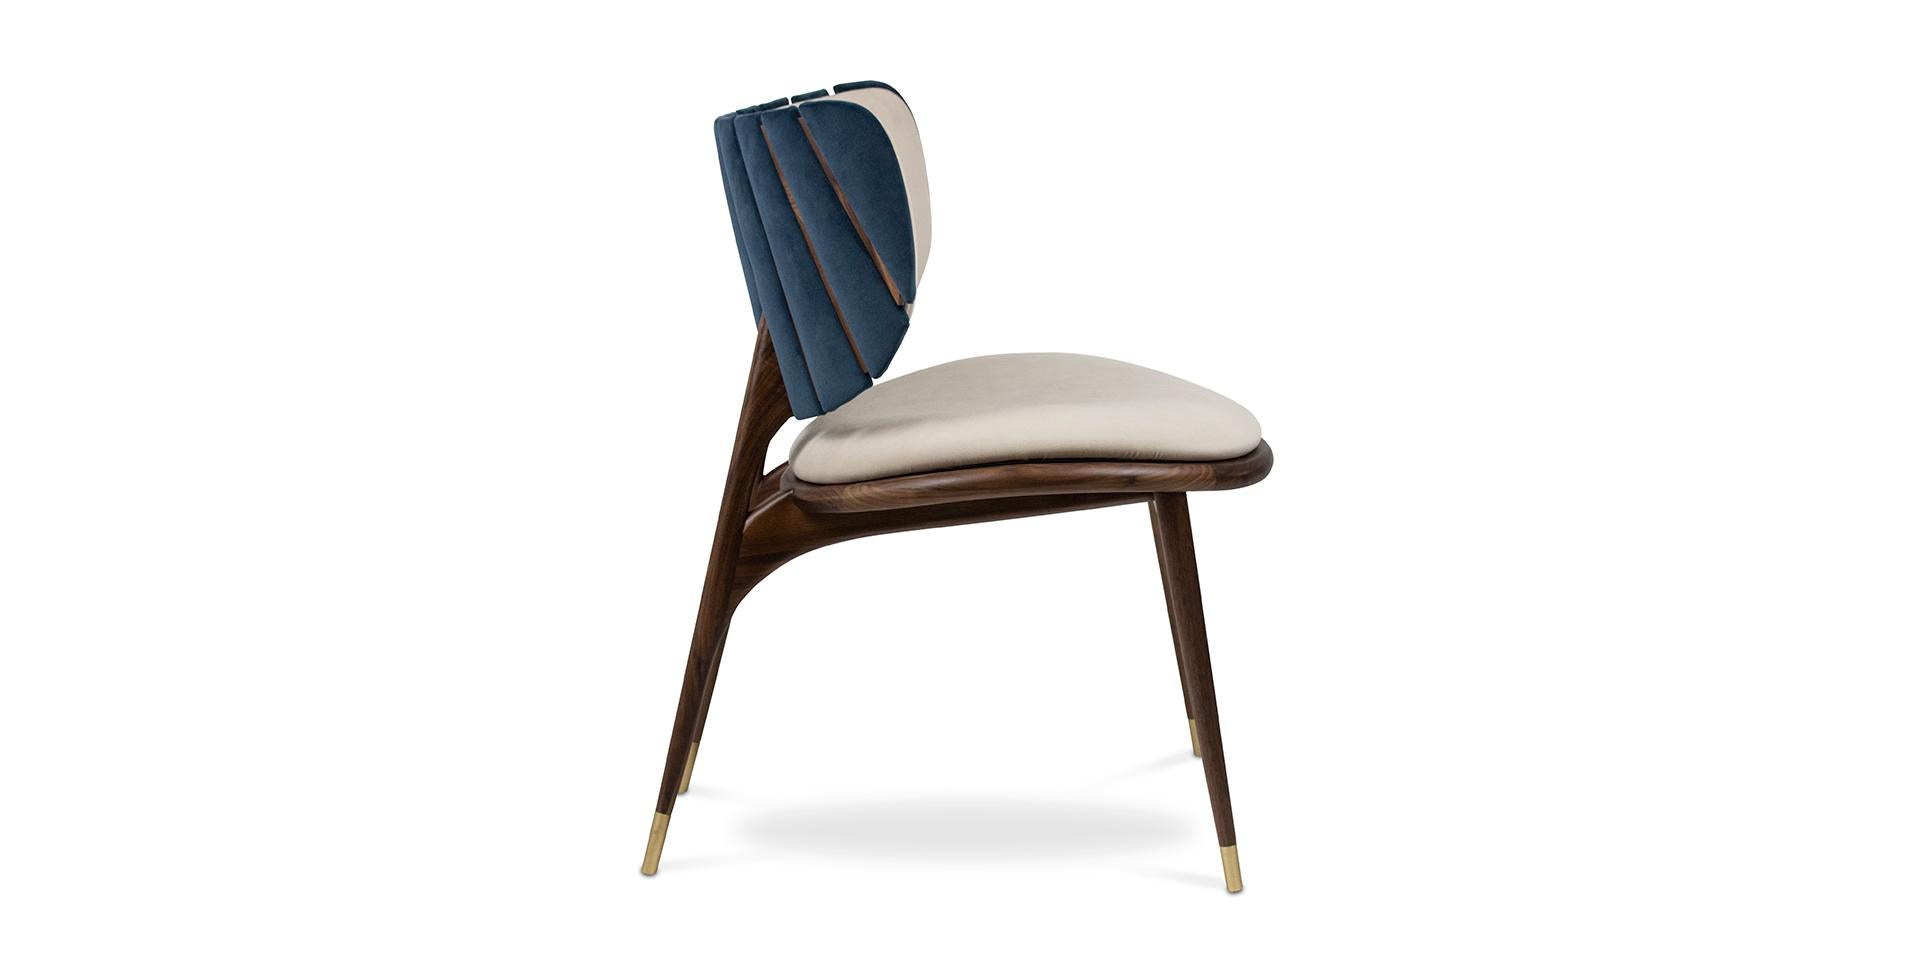 La chaise Uchiwa est un hymne au détail. De sa frise en bois dans un style minimaliste à facettes, à ses boiseries uniques en structure de bois massif de noyer. Cette pièce extraordinaire combine les nouvelles tendances en matière de design et